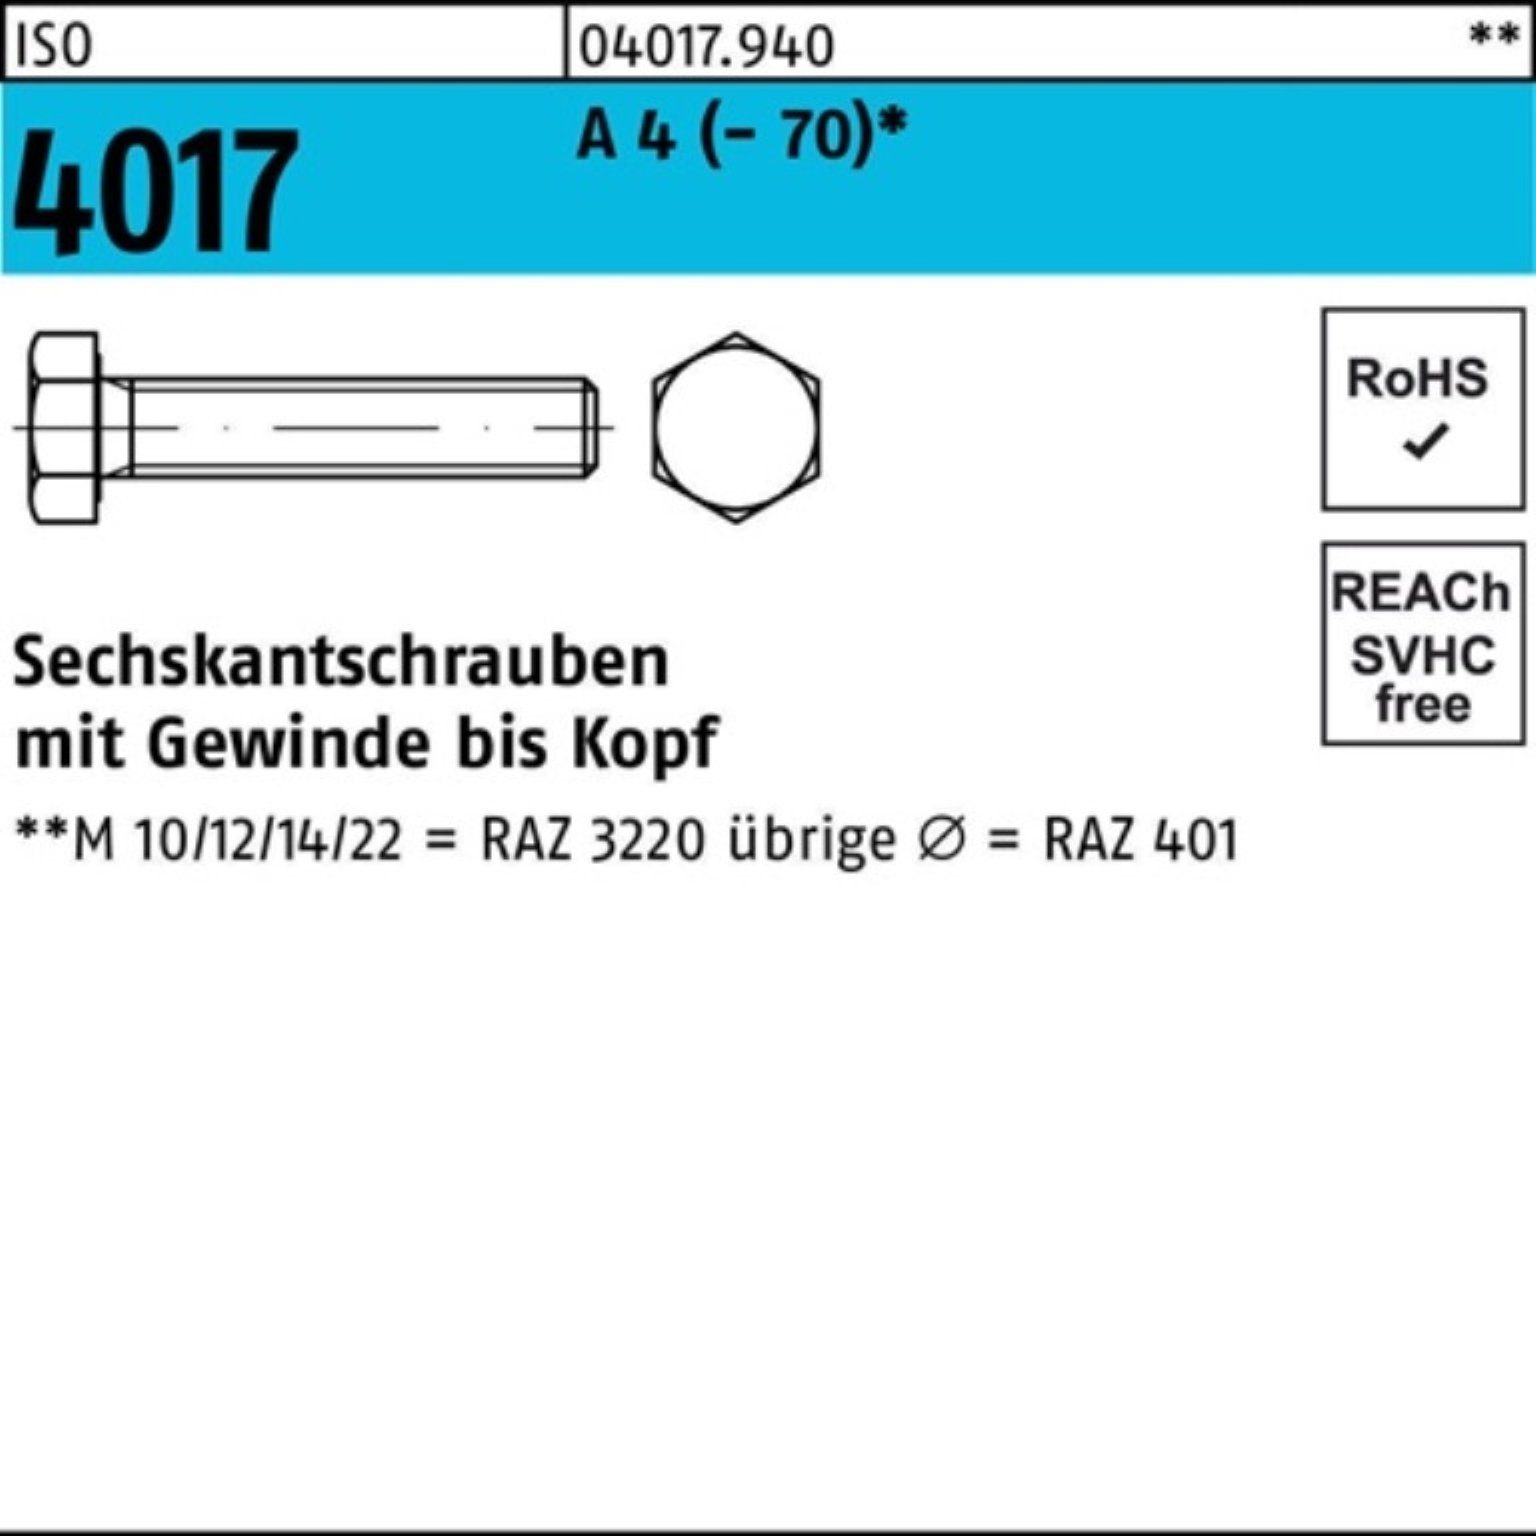 M14x Stück 4017 Bufab Sechskantschraube 1 VG 100er 150 A Pack 4 Sechskantschraube (70) ISO